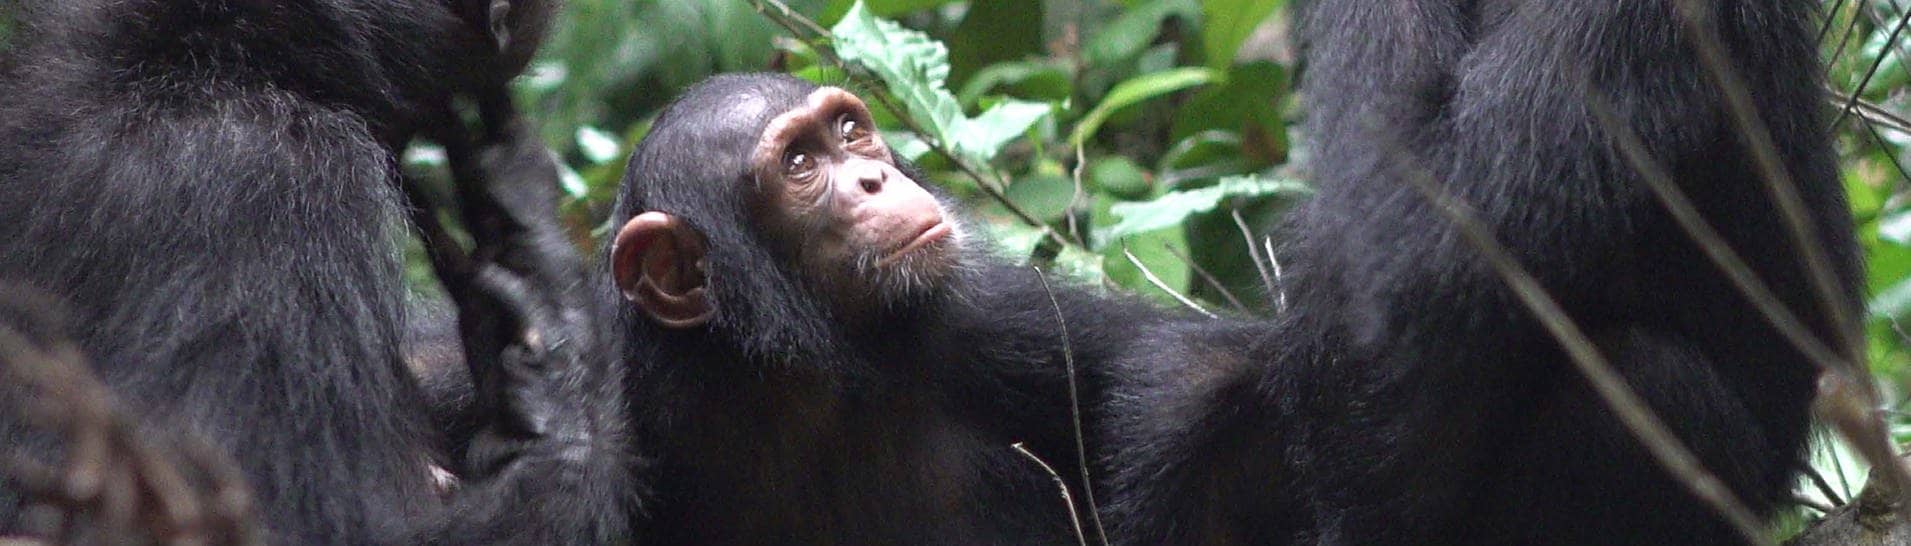 Schimpansen sitzen in Afrika zusammen